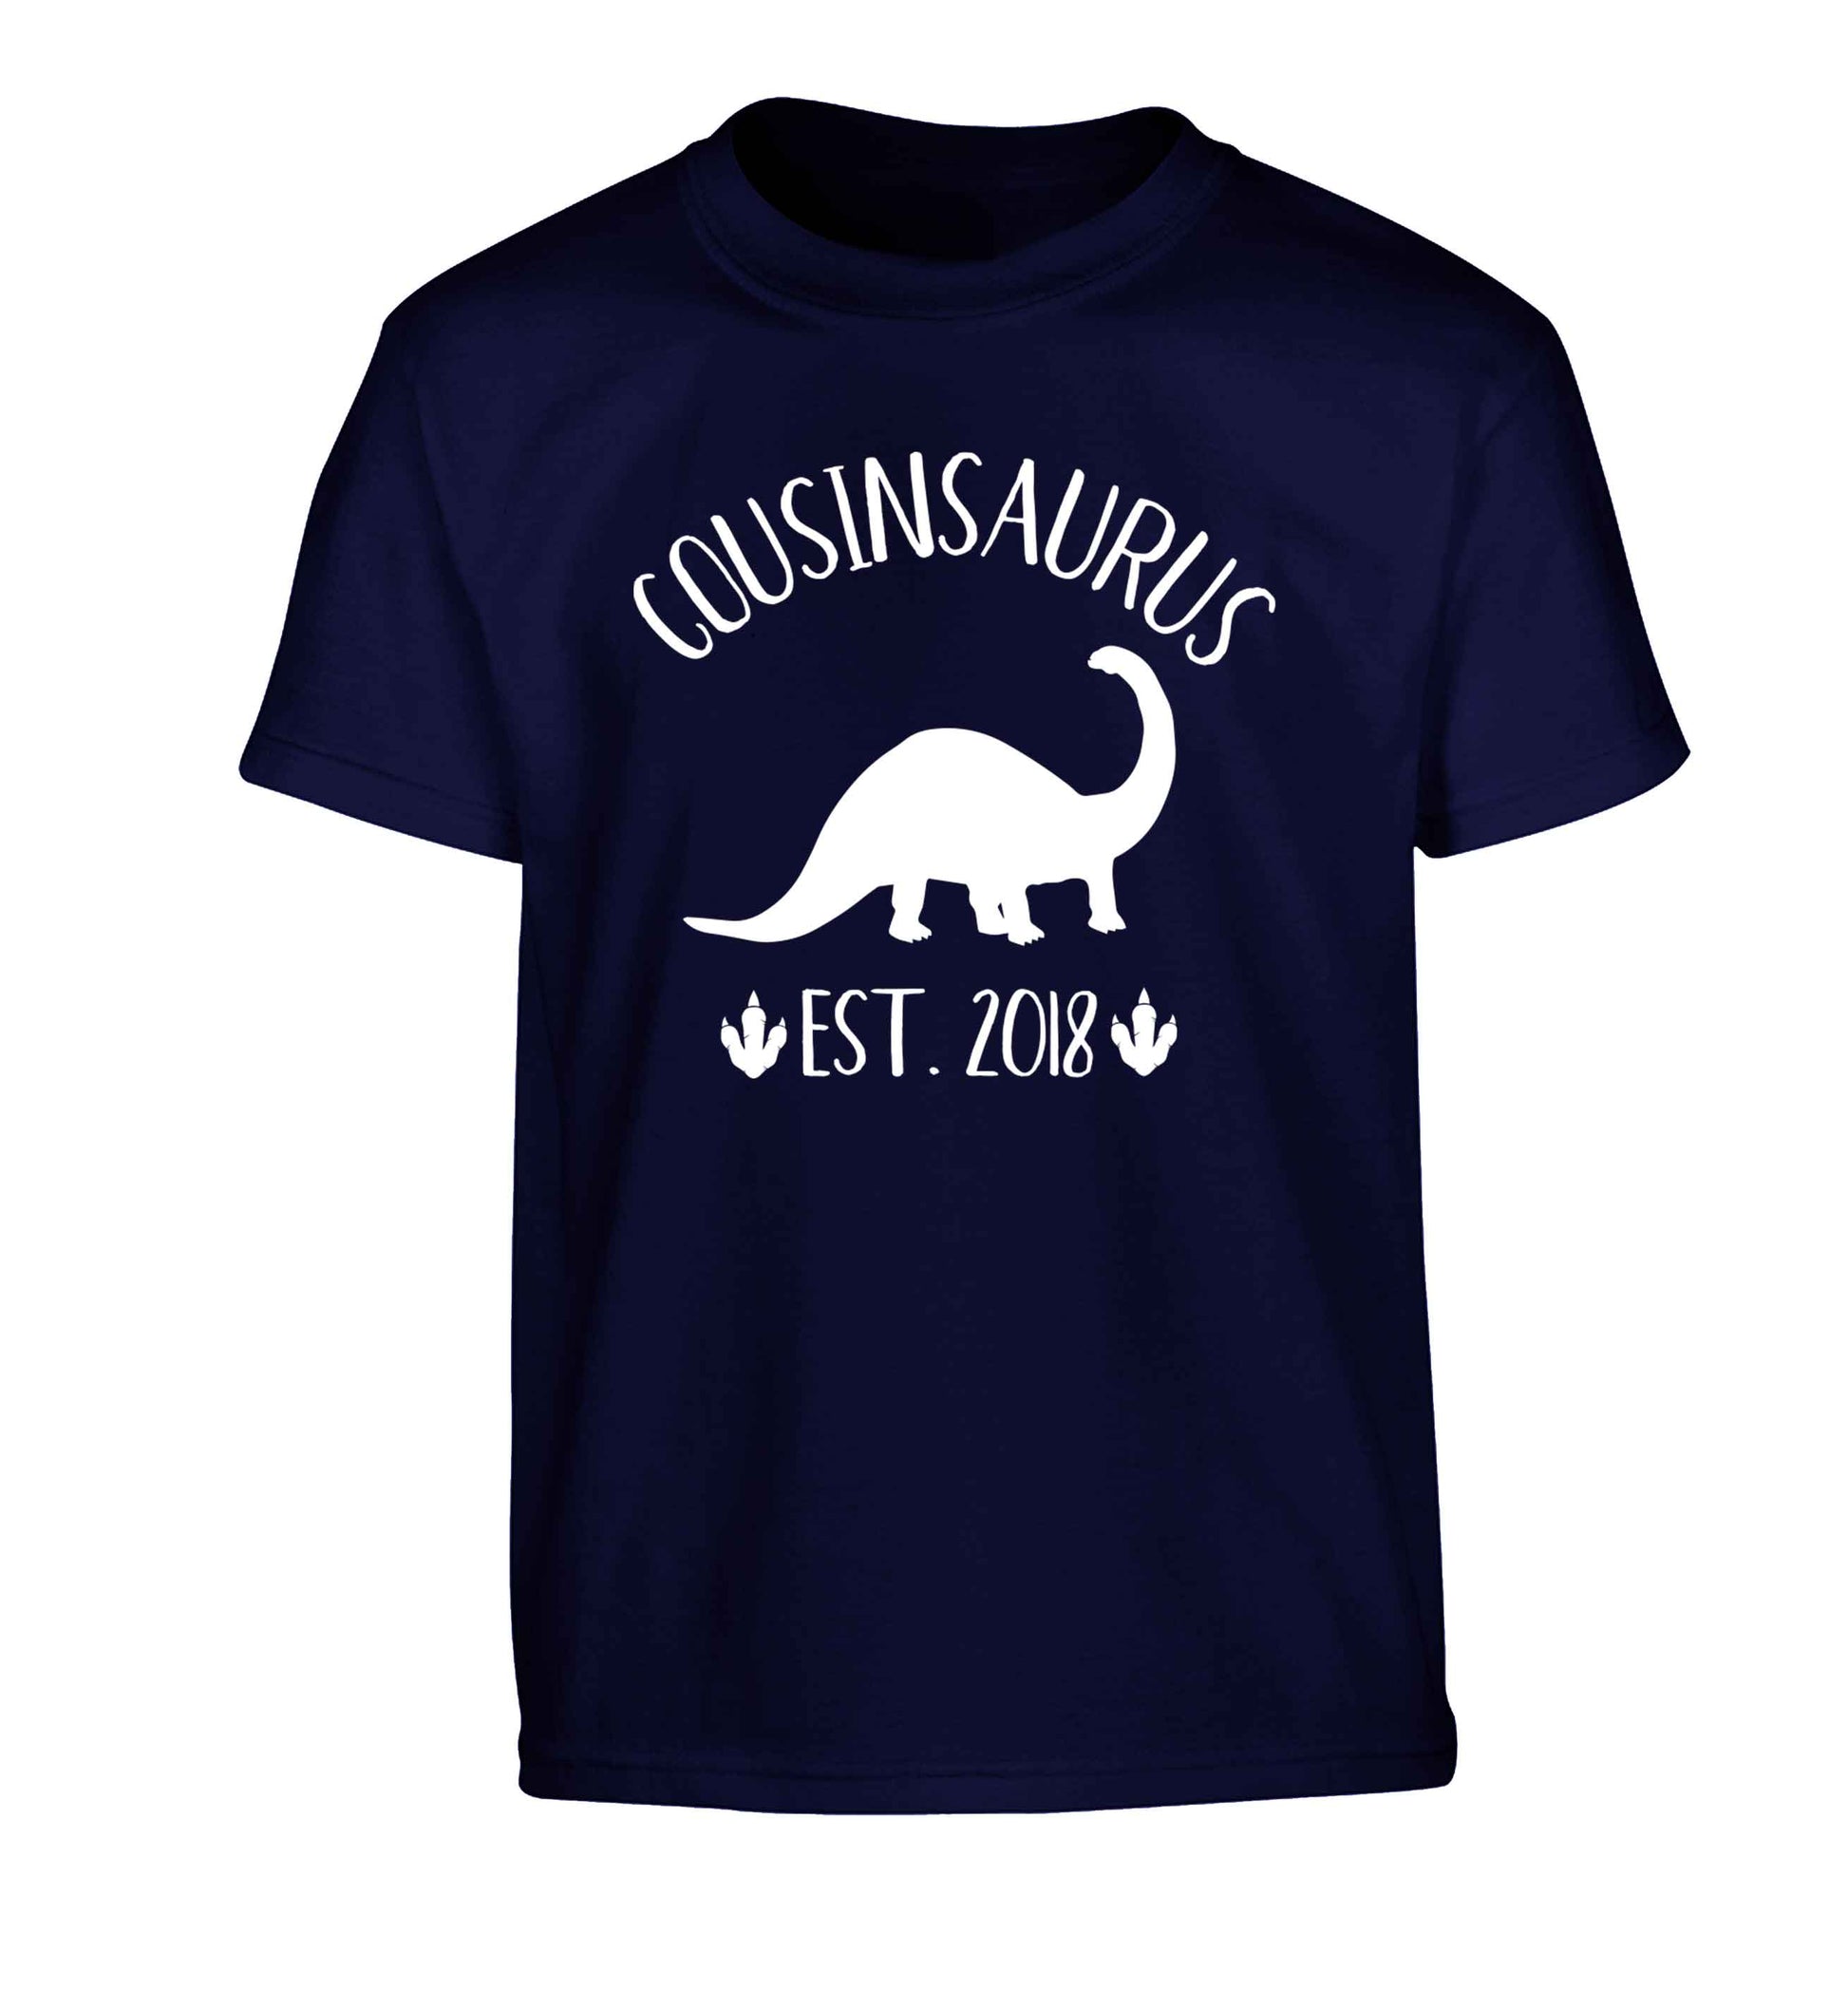 Personalised cousinsaurus since (custom date) Children's navy Tshirt 12-13 Years